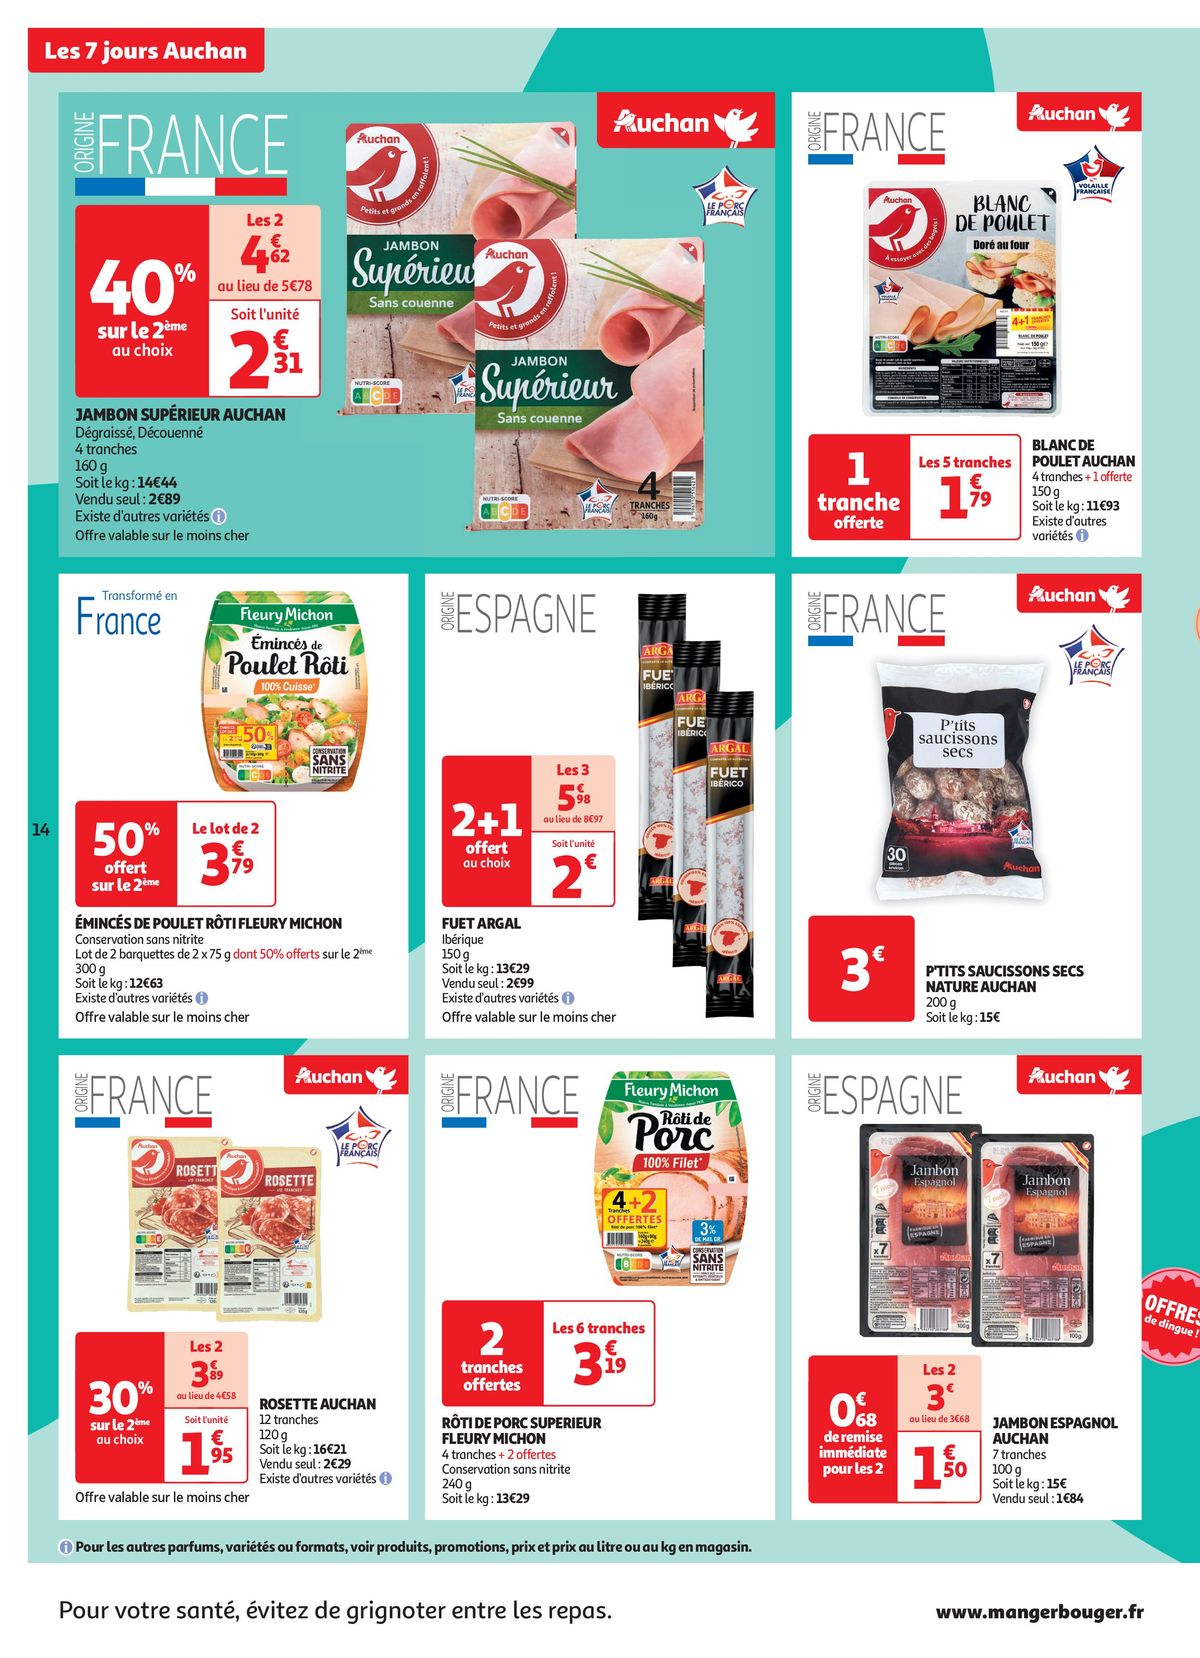 Catalogue C'est les 7 jours Auchan dans votre super !, page 00014